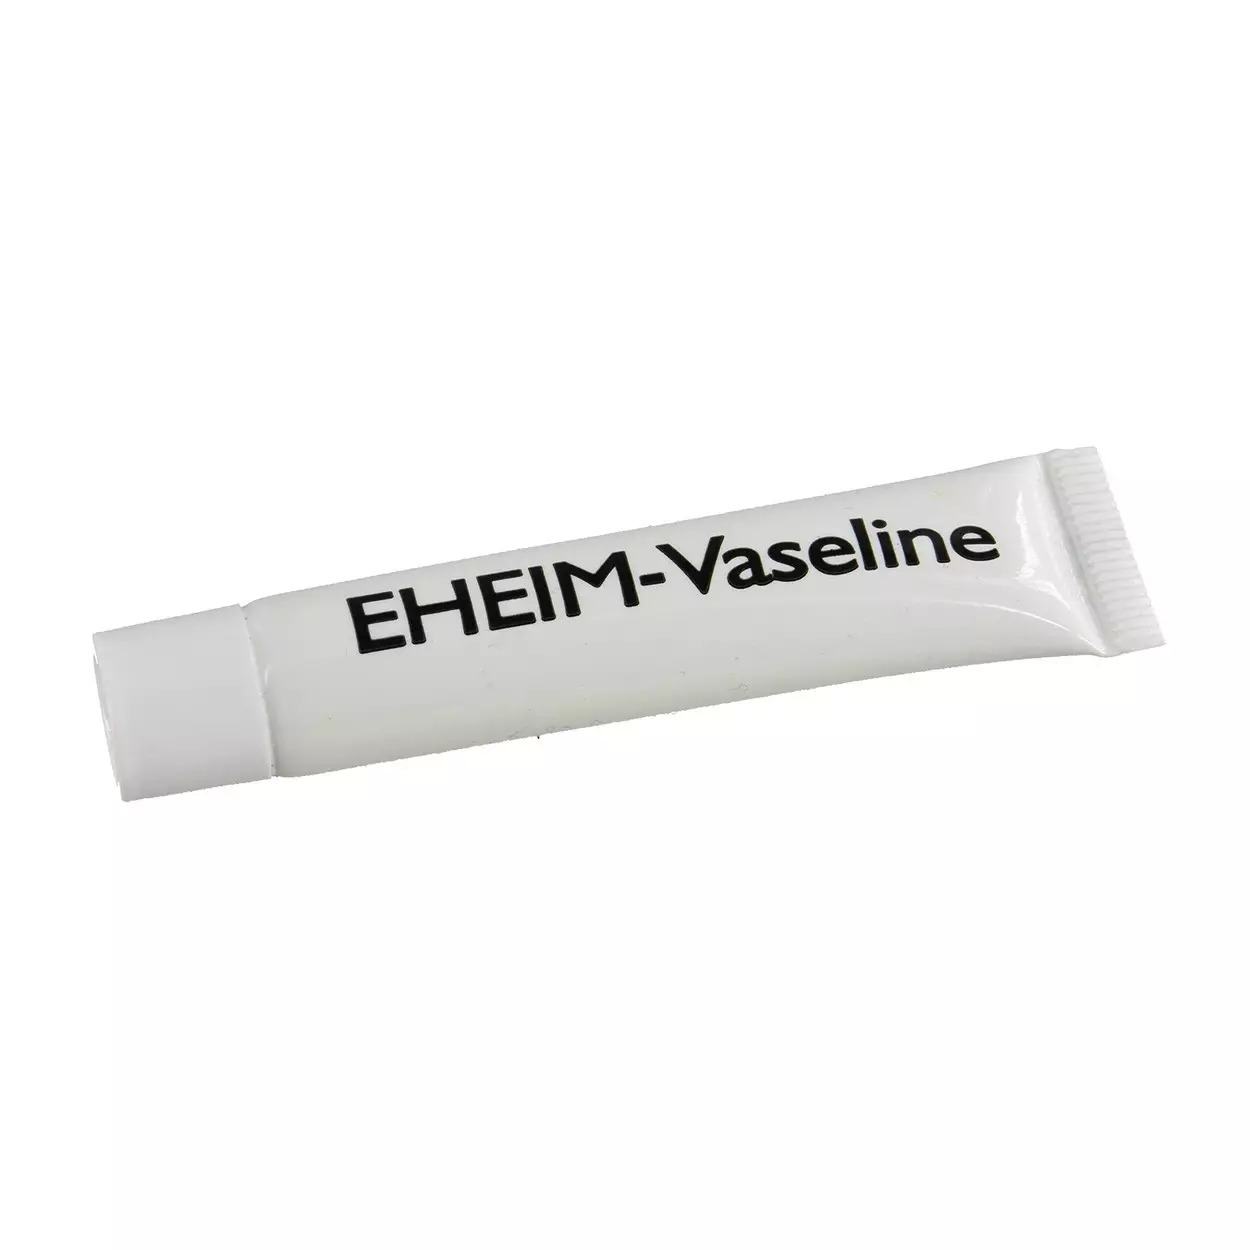 EHEIM Vaseline 5 gr tube de graisse silicone pour la lubrification des joints et autres pièces